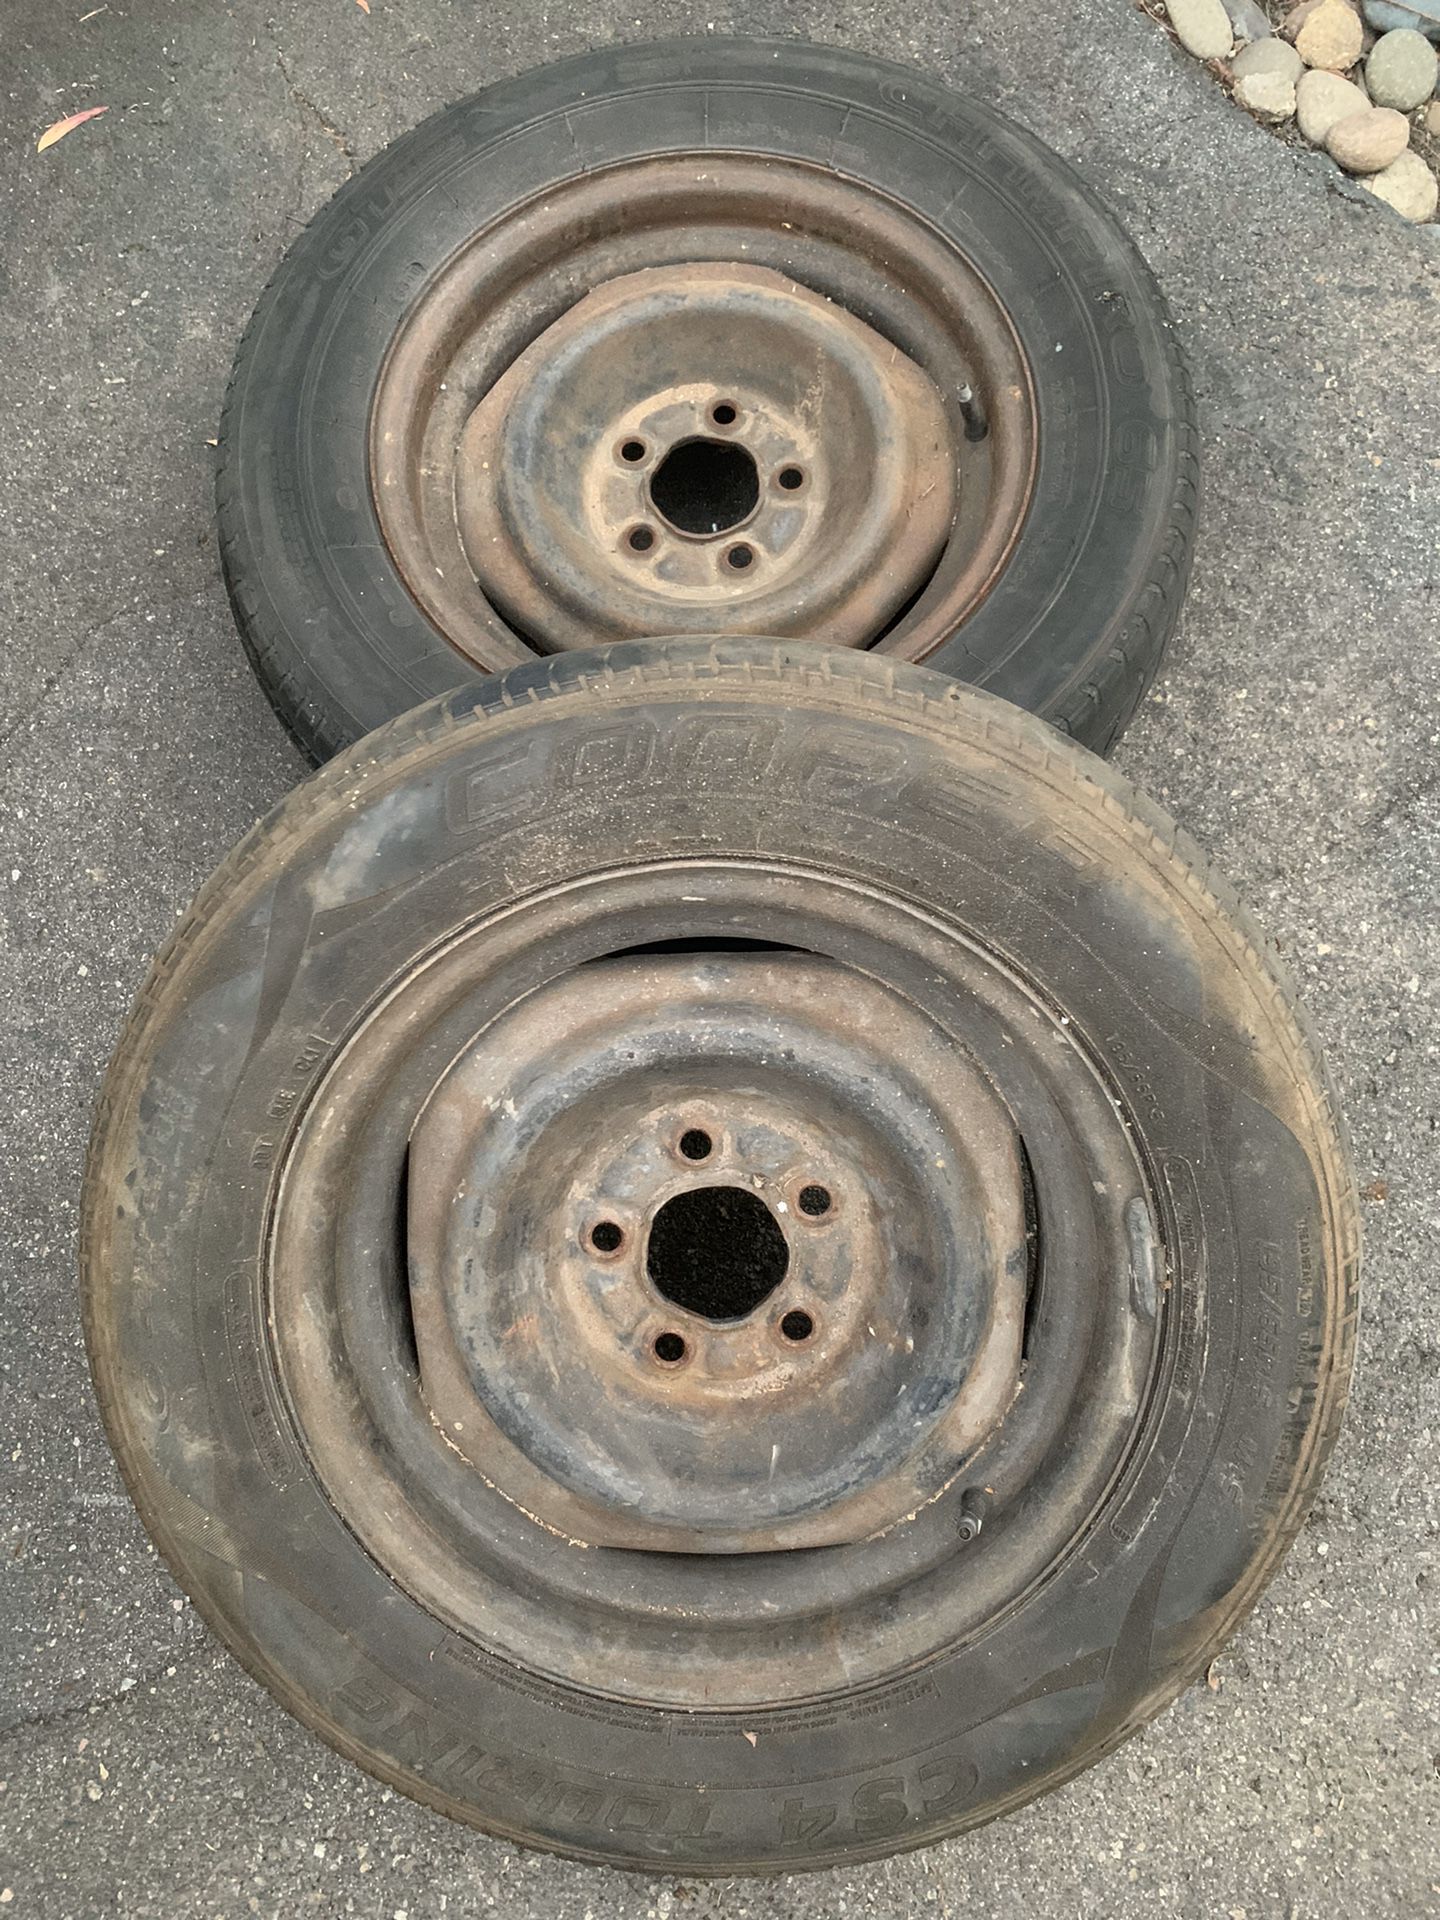 Pair of 15” steel wheels. Ford pattern.